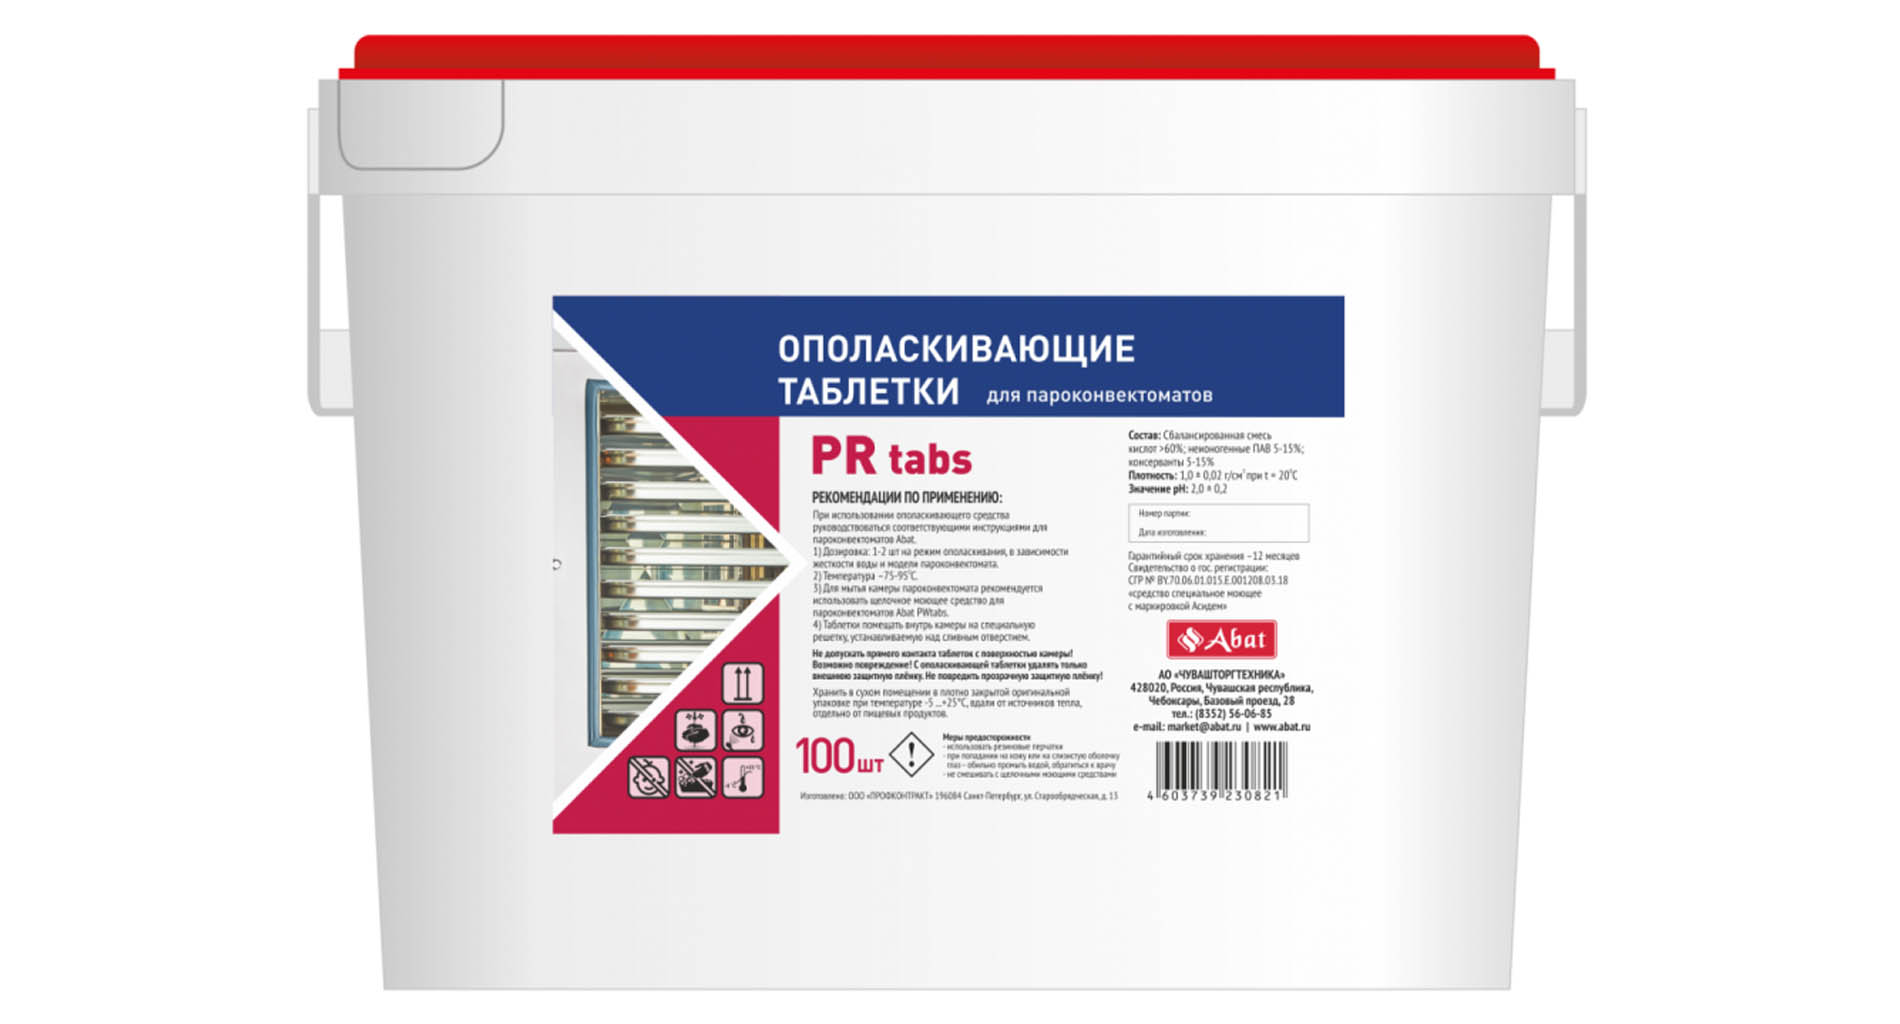 Abat PR tabs (100 шт) - ополаскивающие таблетки